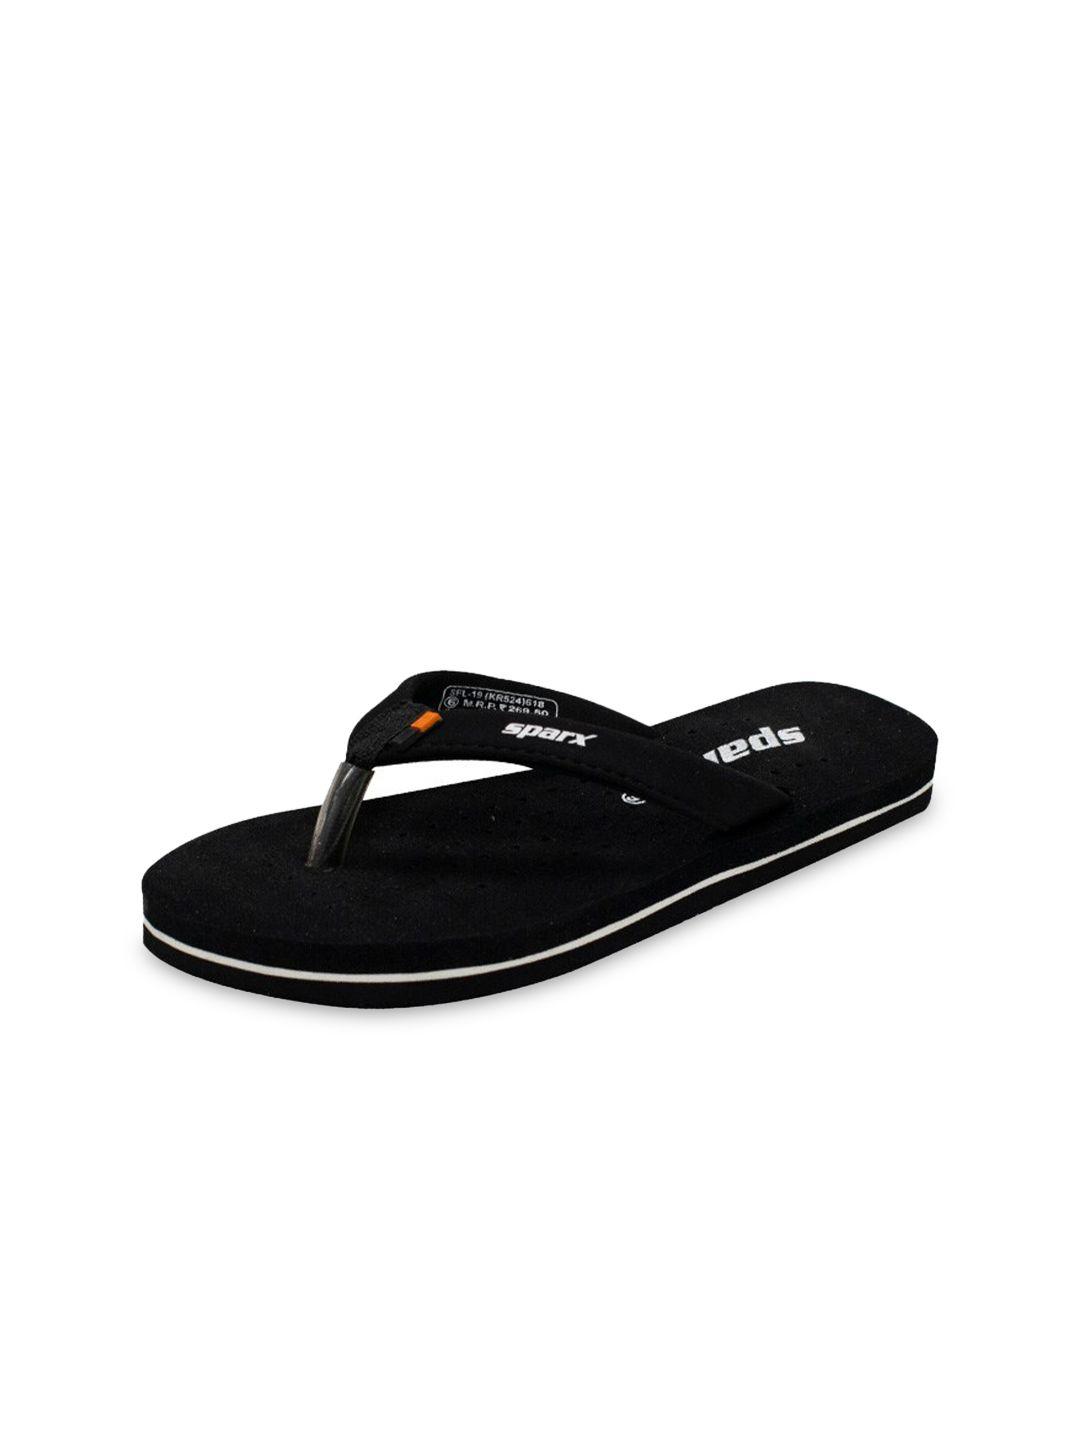 sparx women black & white room slippers